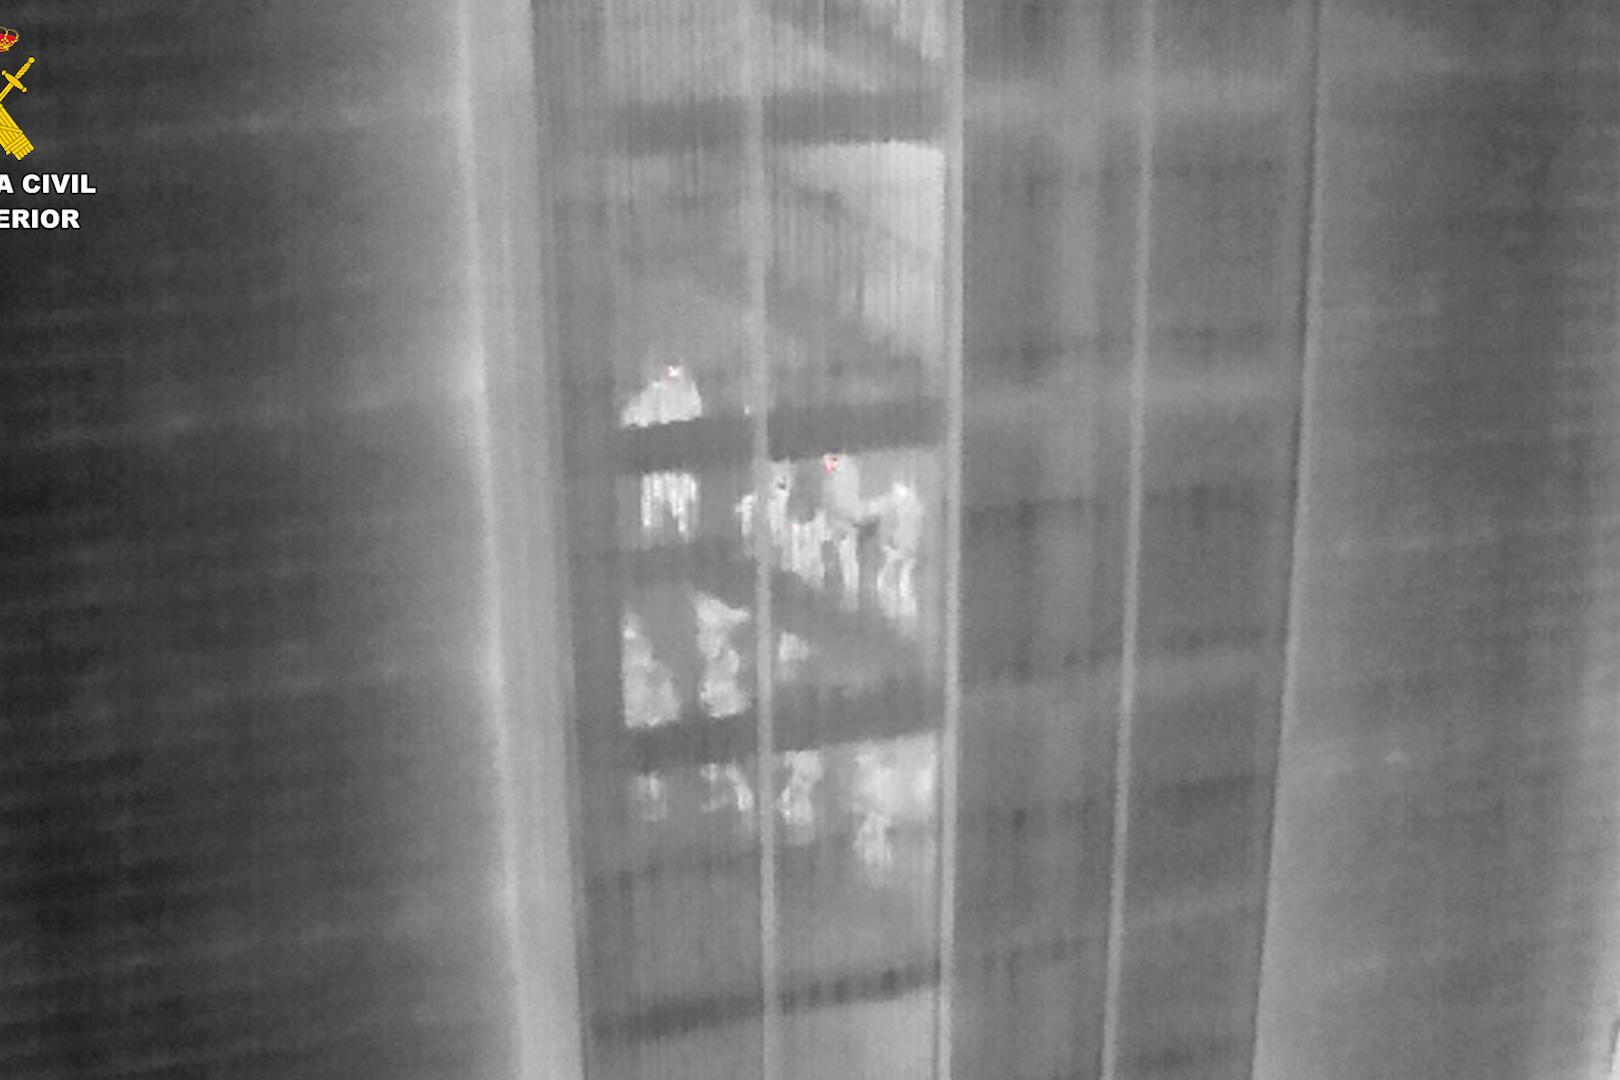 Imagen termica de los agentes dentro de un edificio antes de proceder a uno de los registros